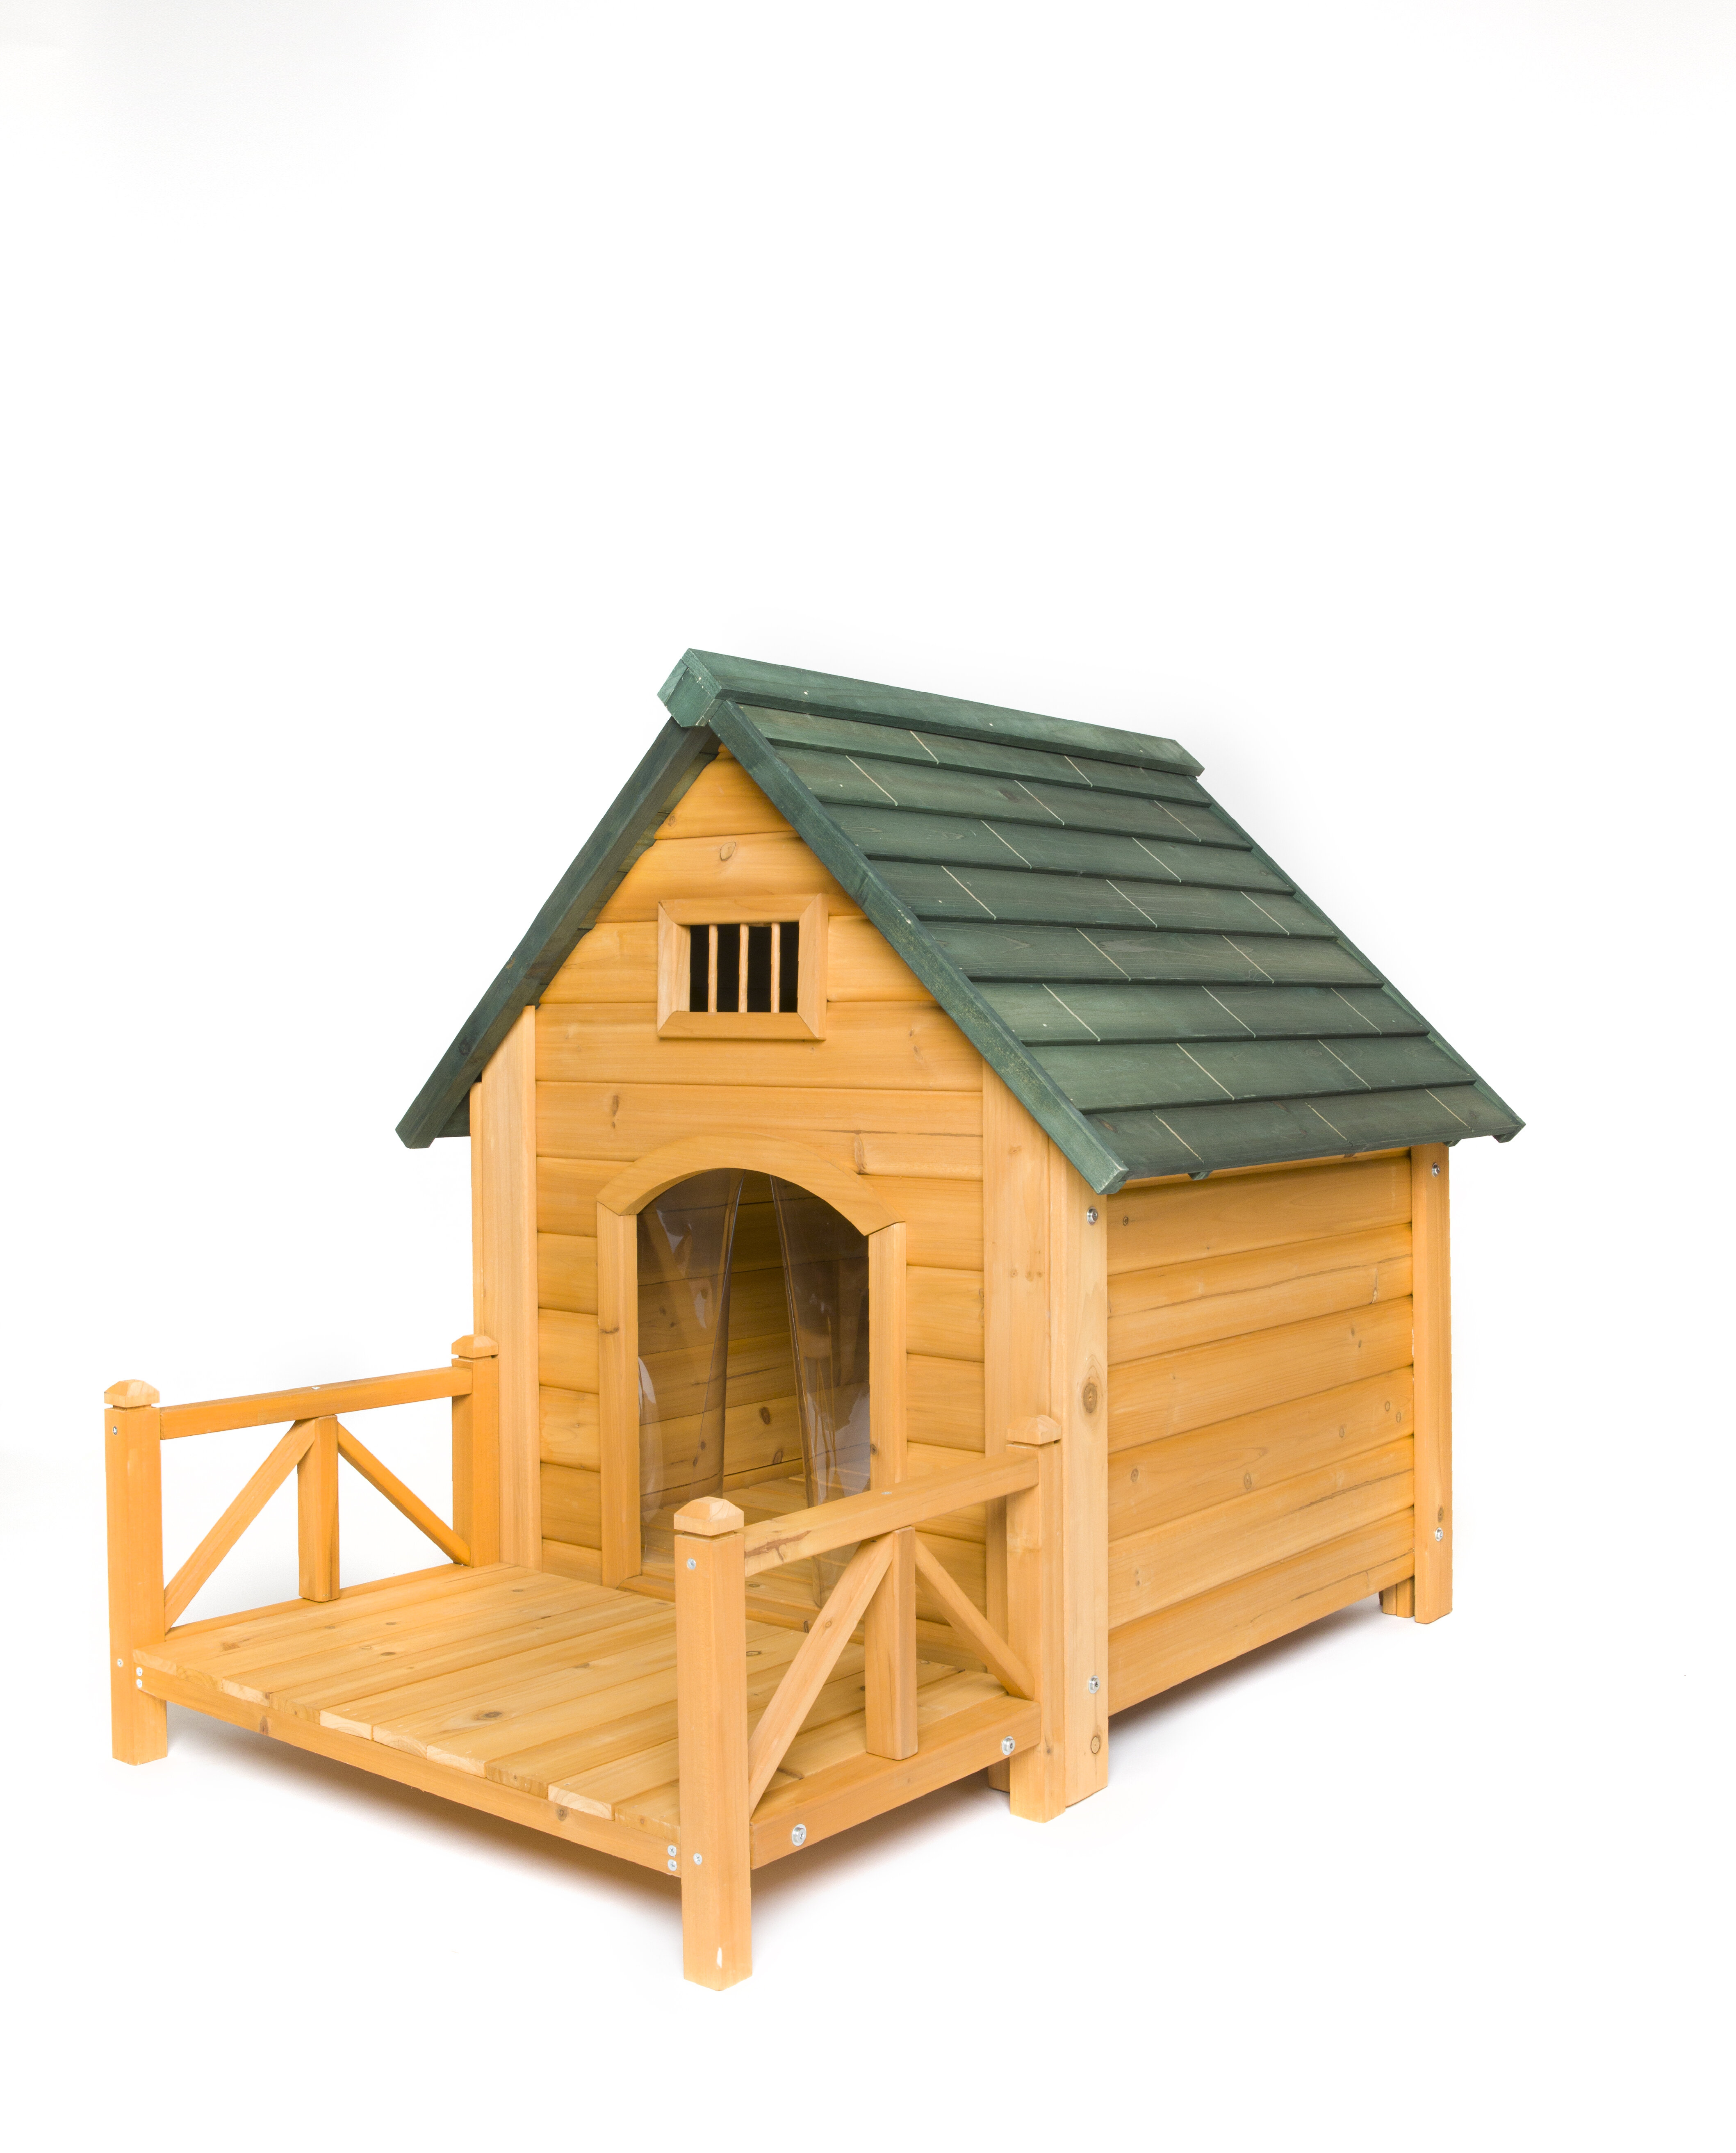 https://assets.wfcdn.com/im/13291408/compr-r85/1079/107957300/baron-wood-insulated-k-9-kastle-dog-house.jpg